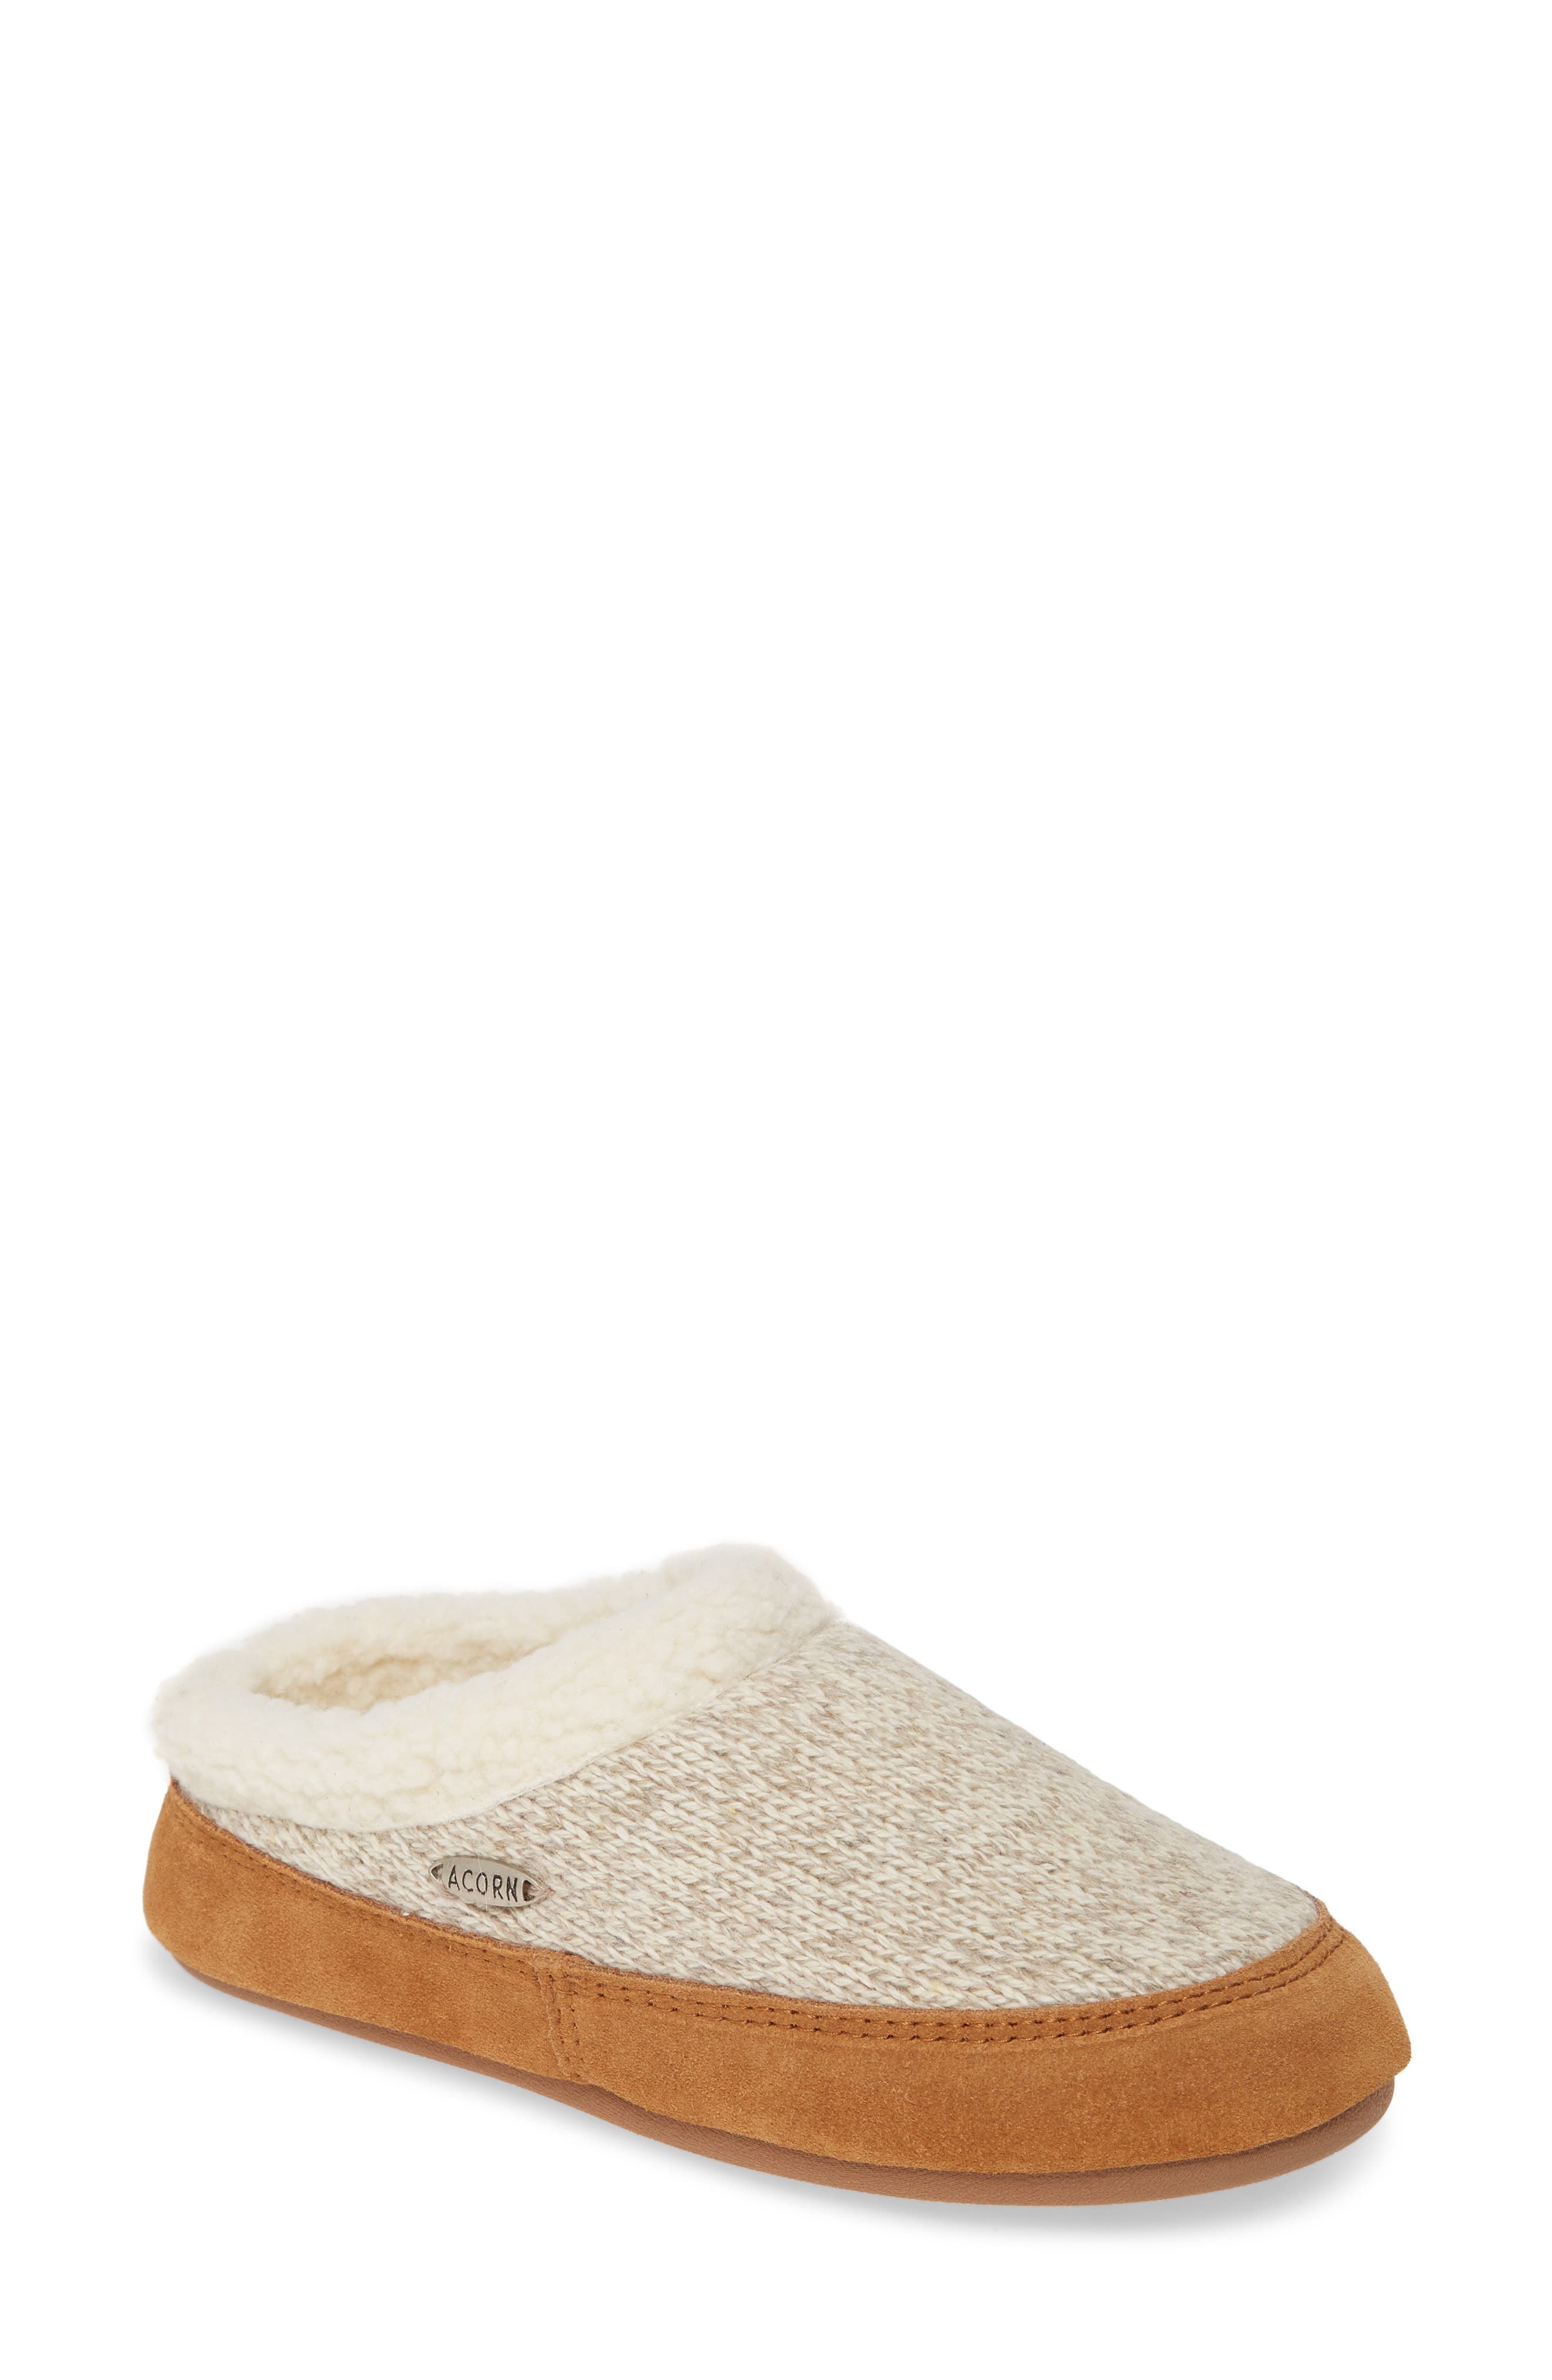 acorn slippers | Nordstrom